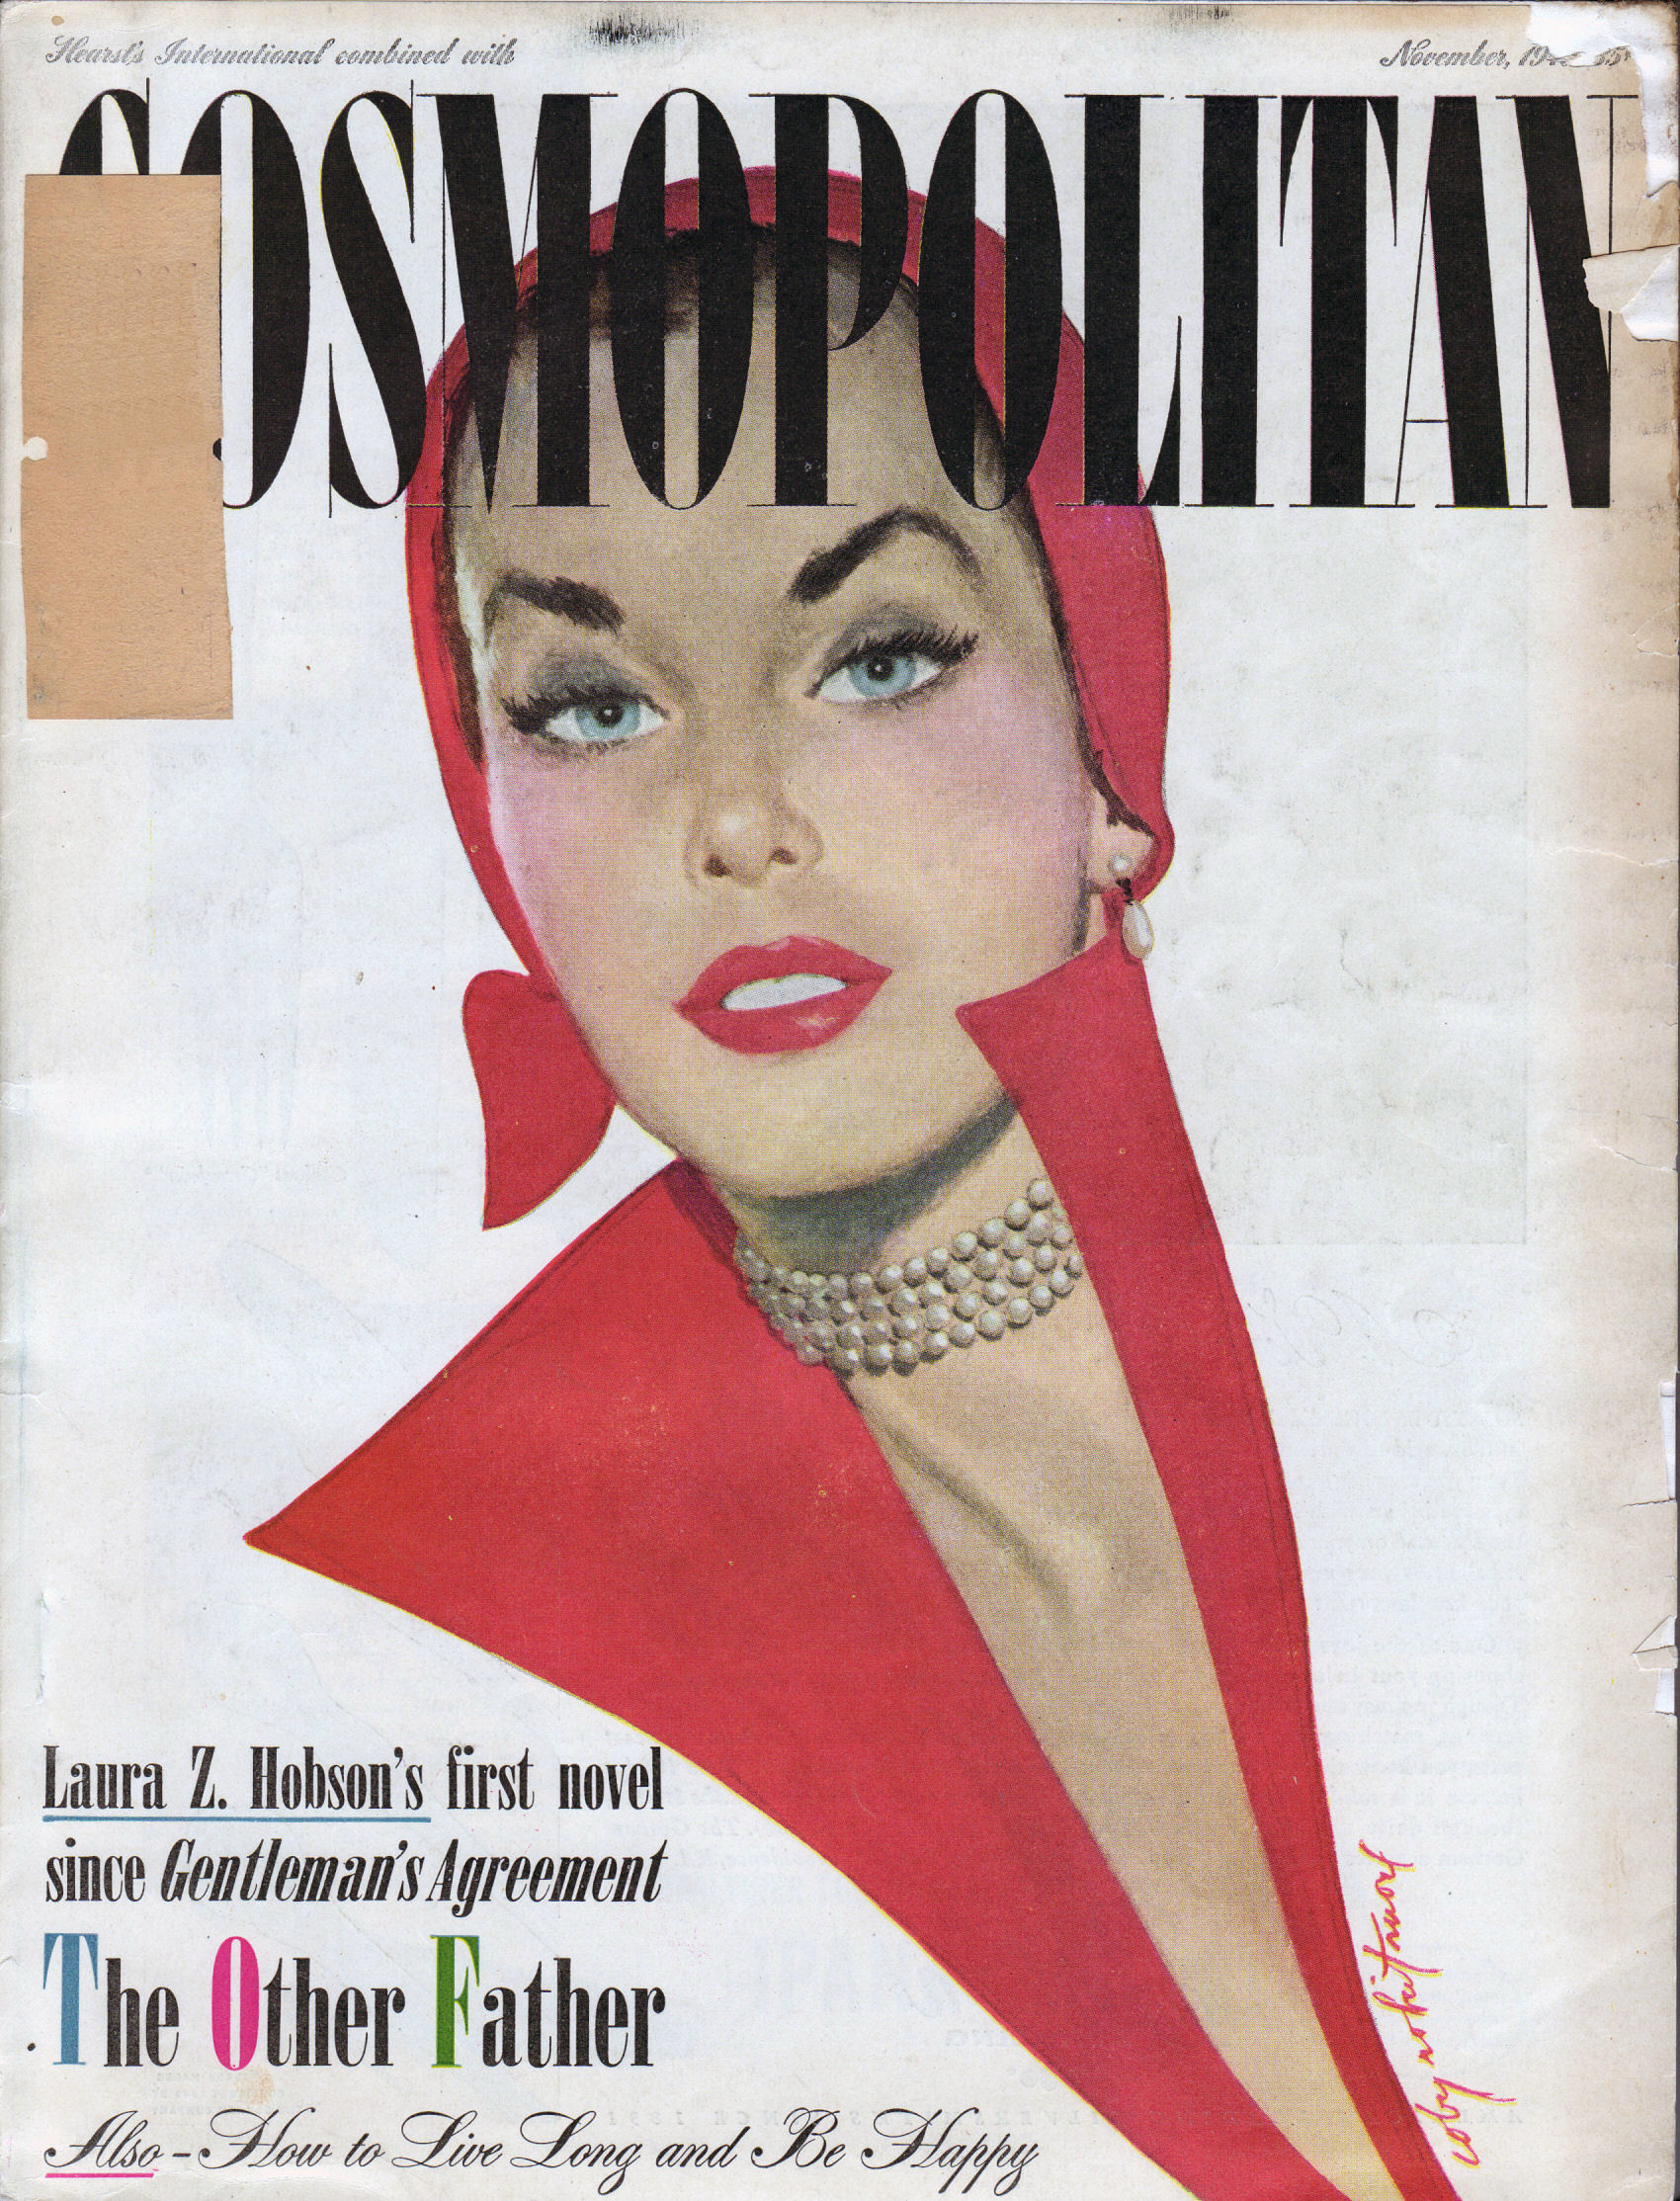 Cosmopolitan, November 1949.